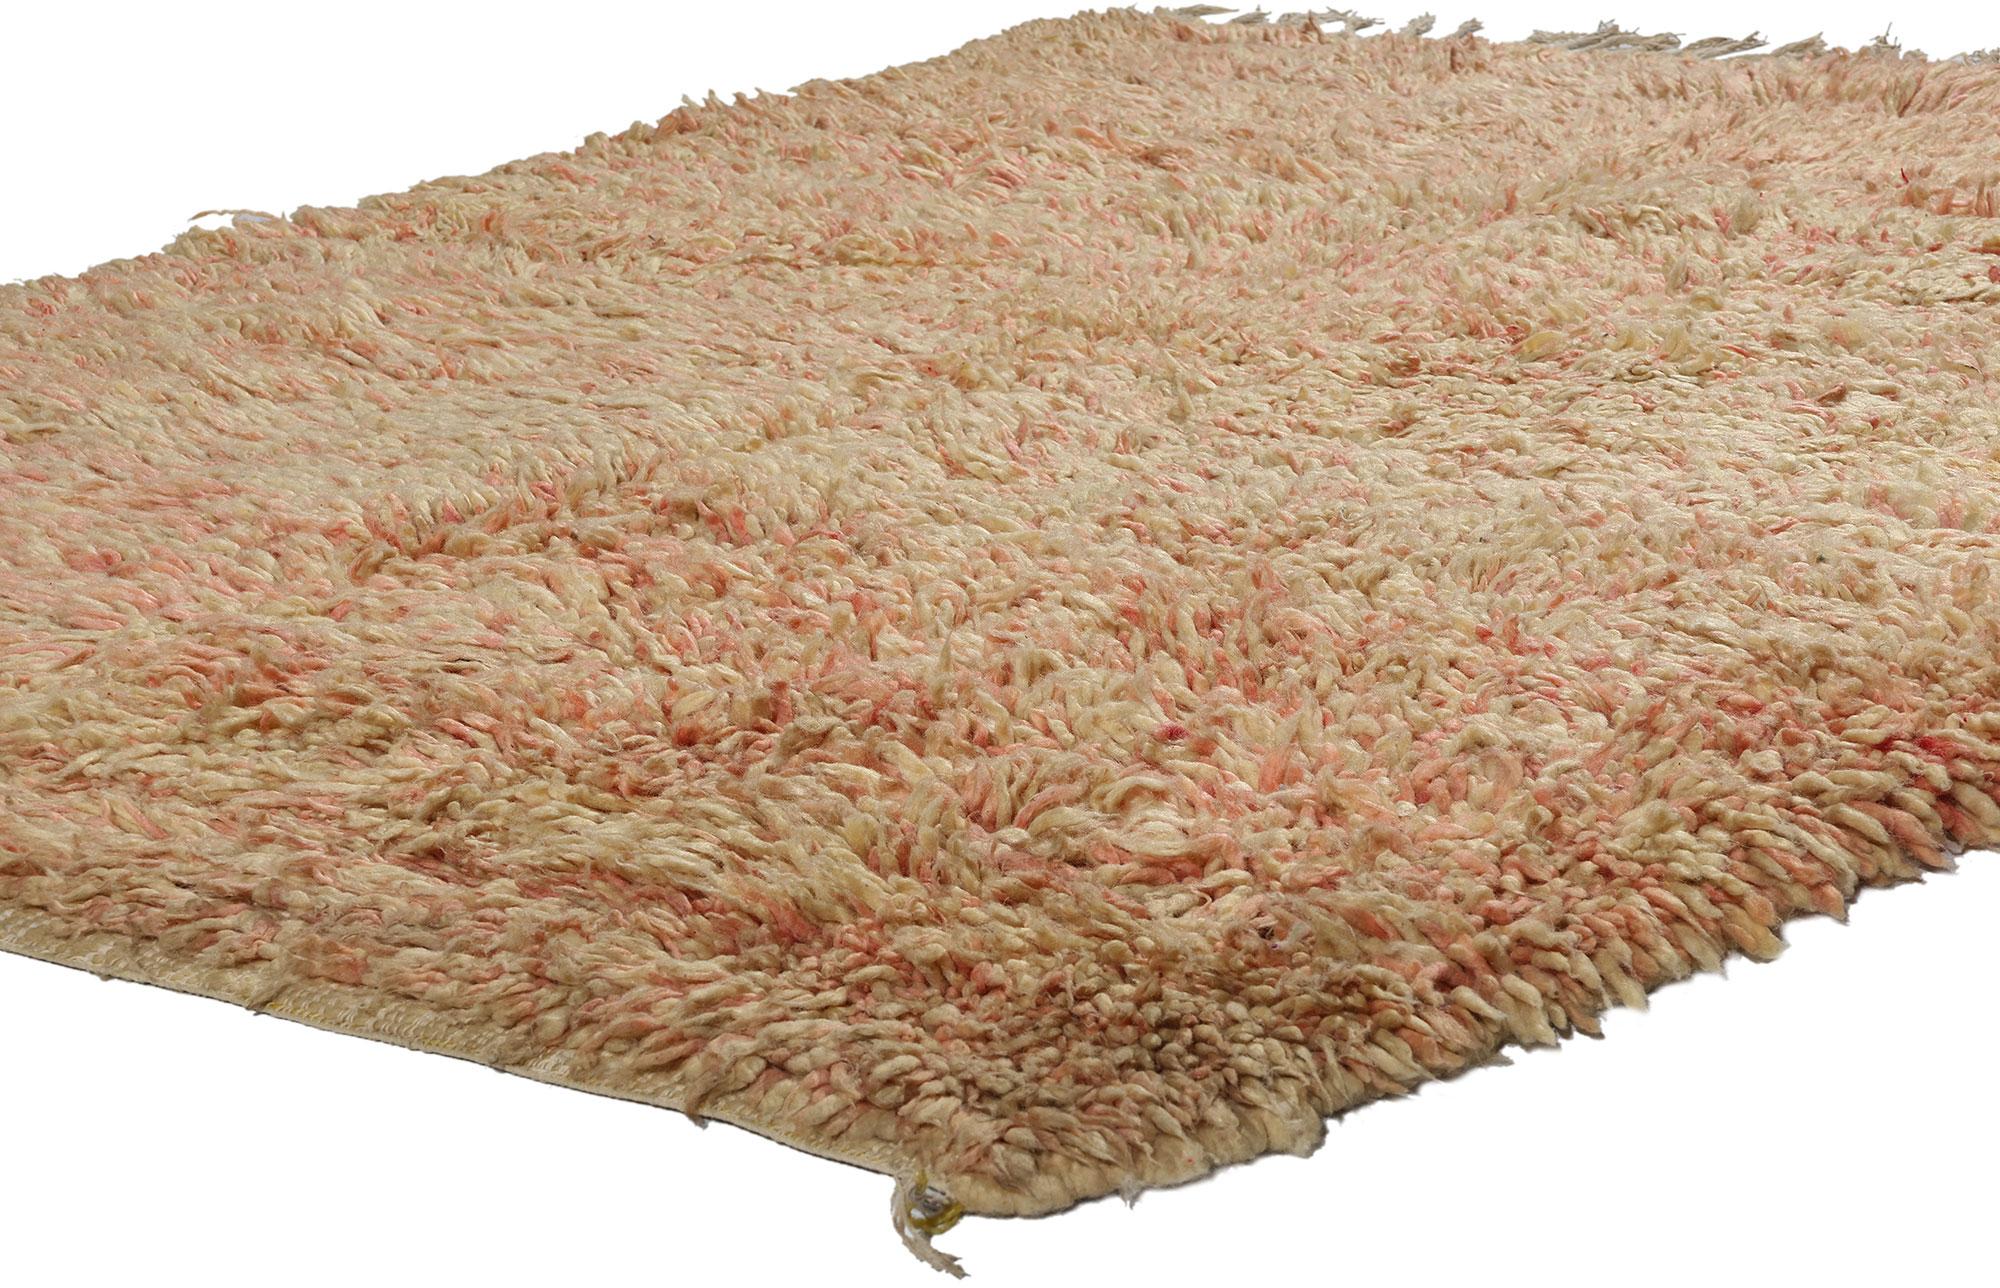 21806 Marokkanischer Teppich Vintage Pink Boujad, 05'02 x 06'07. Der Boujad-Teppich stammt aus der Region Boujad im Mittleren Atlasgebirge in Marokko und ist eine fesselnde Verkörperung exquisiter Handwerkskunst und eines reichen kulturellen Erbes.